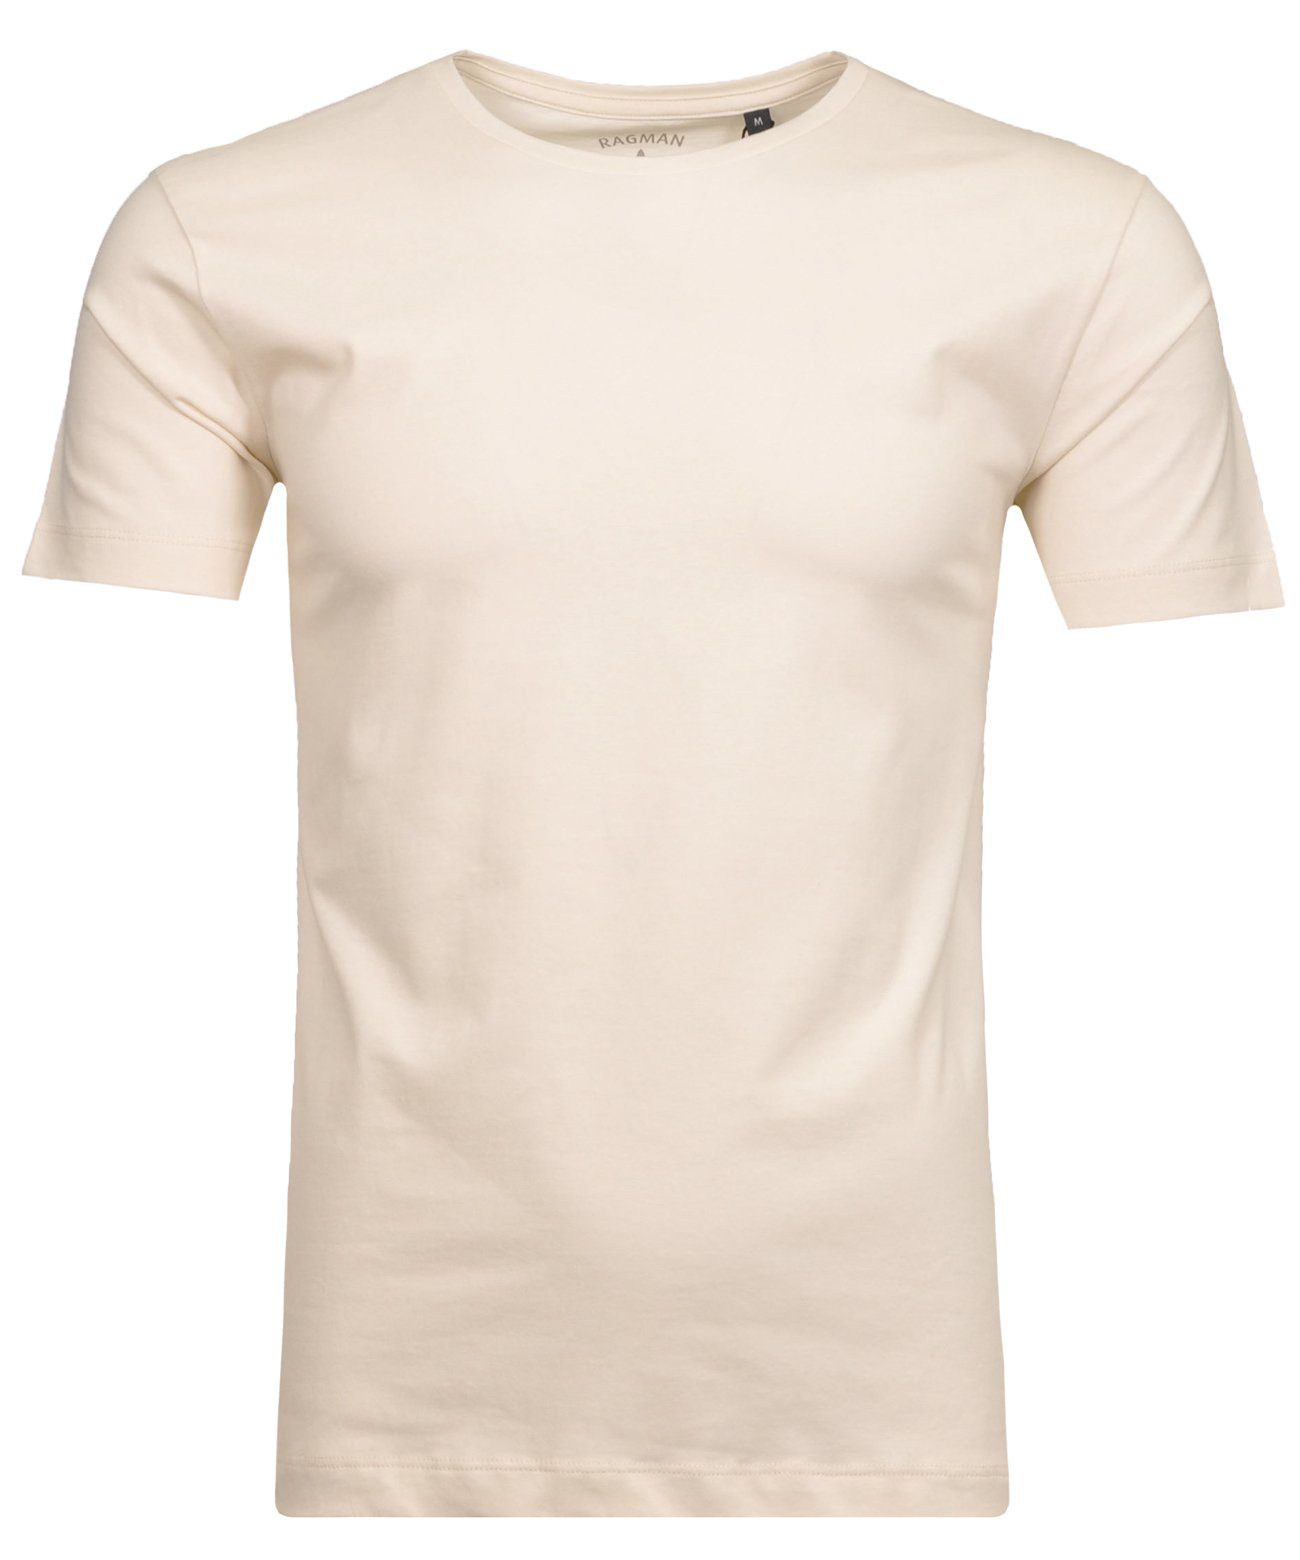 RAGMAN T-Shirt Ecru-004